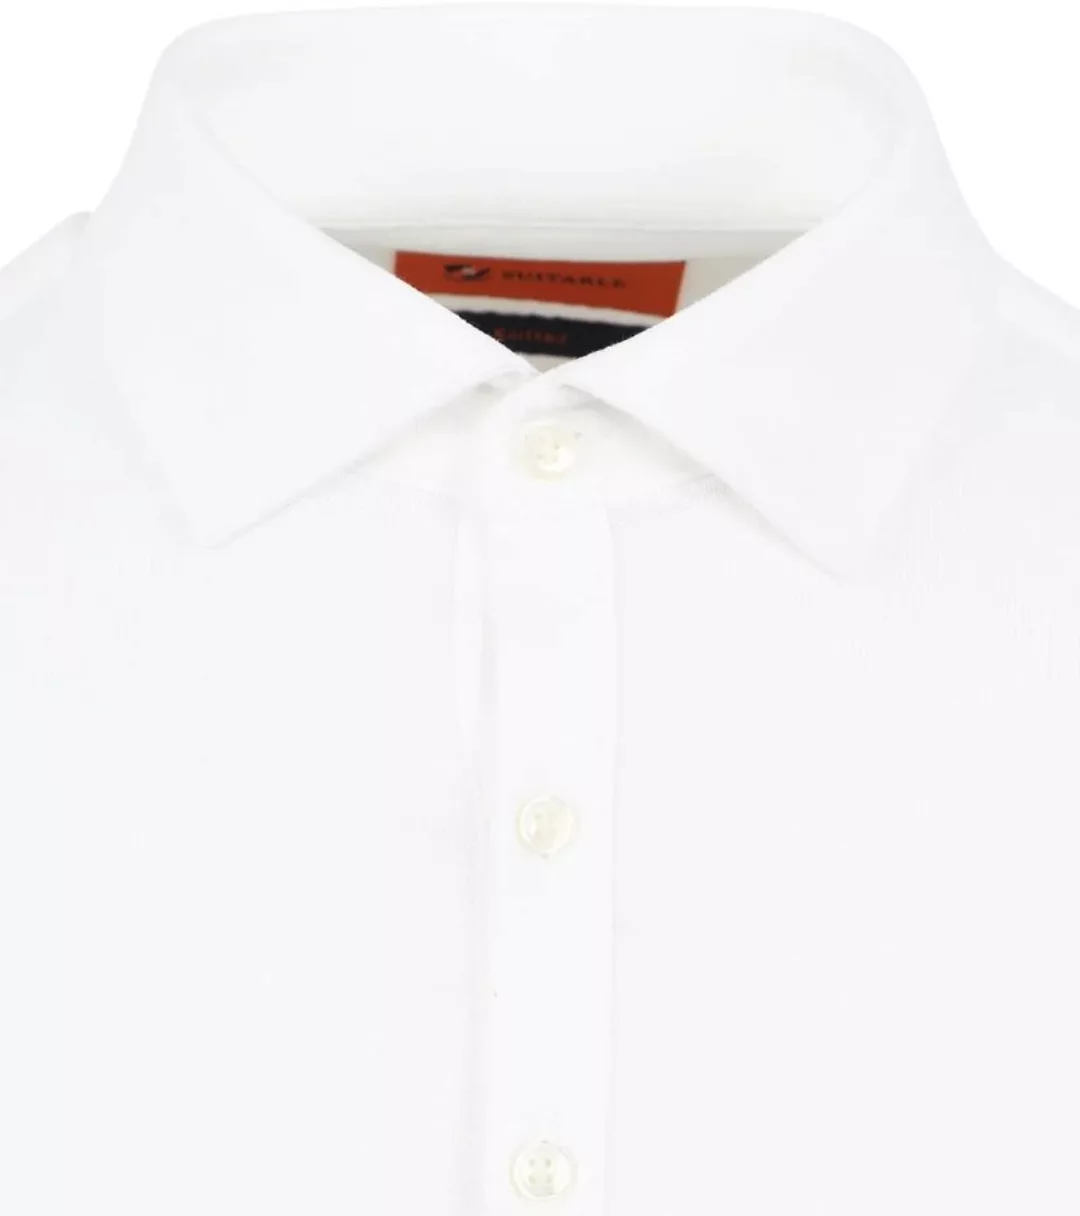 Suitable Camicia Poloshirt Weiß - Größe M günstig online kaufen